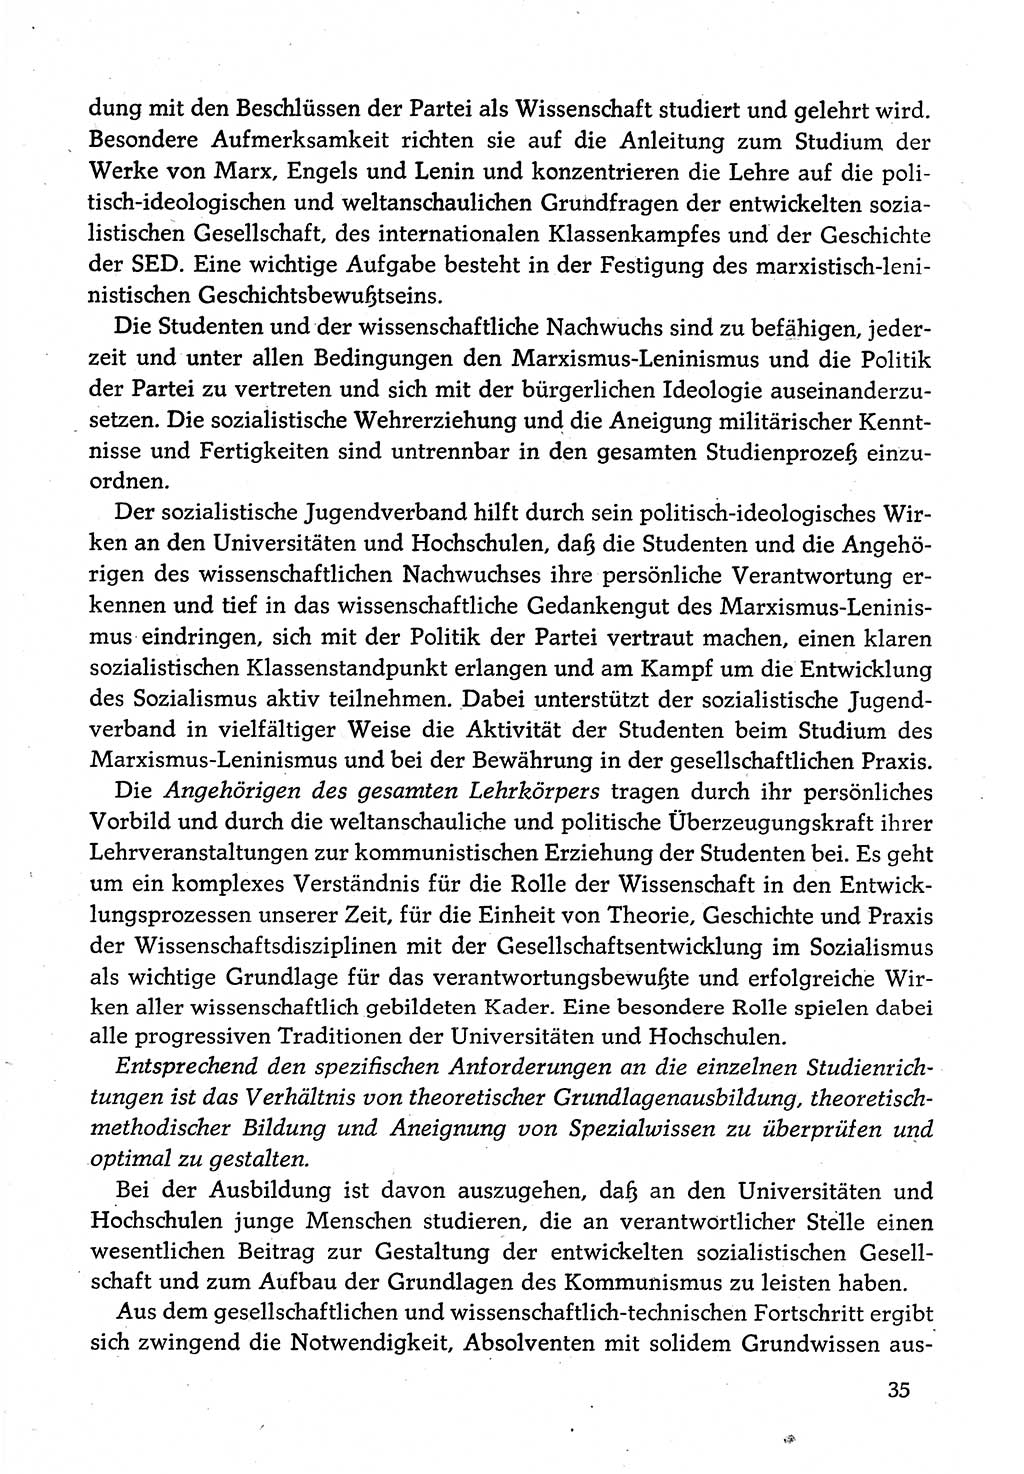 Dokumente der Sozialistischen Einheitspartei Deutschlands (SED) [Deutsche Demokratische Republik (DDR)] 1980-1981, Seite 35 (Dok. SED DDR 1980-1981, S. 35)